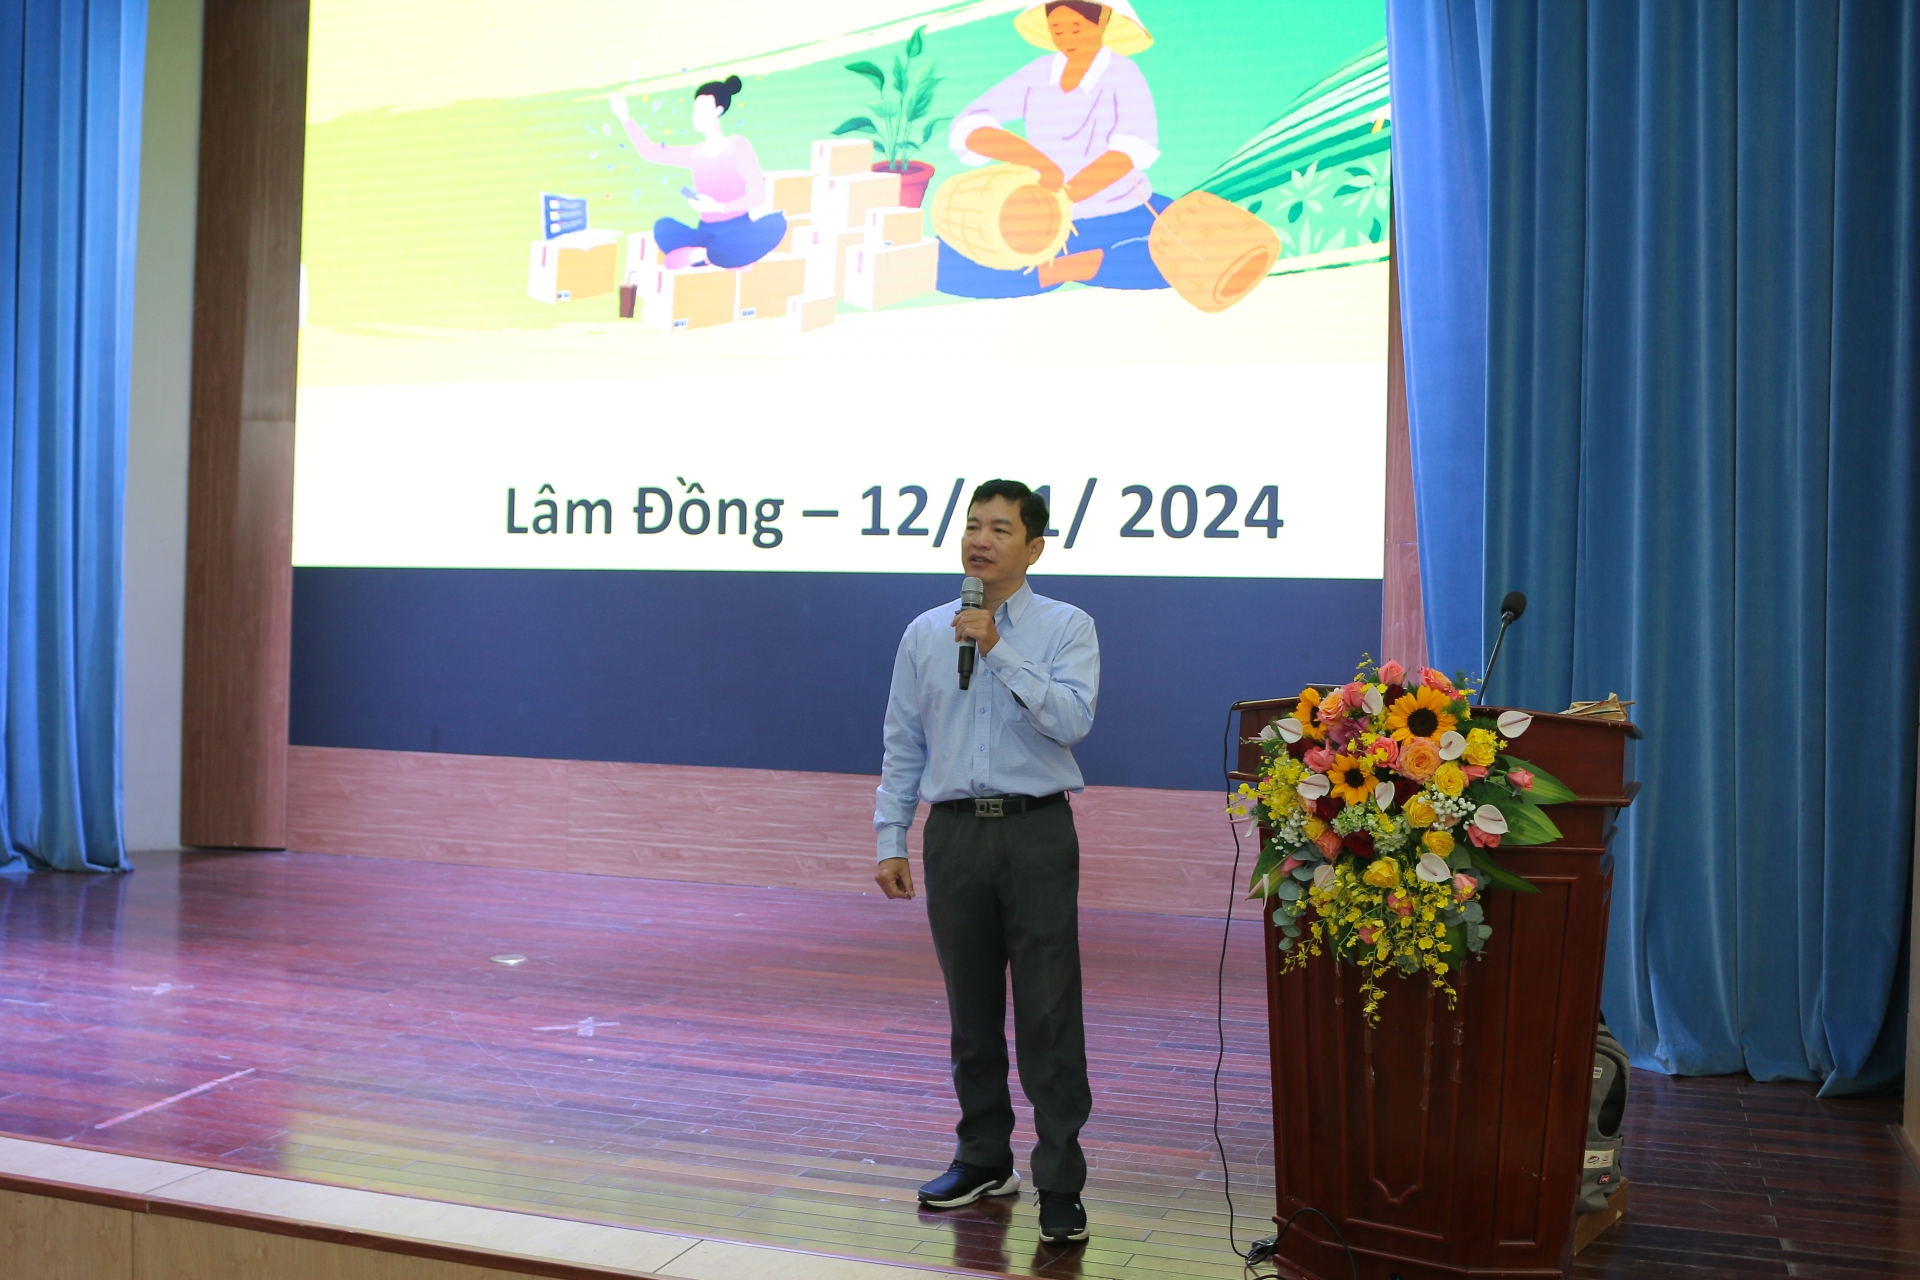 Chuyên gia, giảng viên có kinh nghiệm đến từ Công ty TNHH Quốc tế Unilerver Việt Nam truyền đạt những kiến thức khởi sự kinh doanh về phát triển mô hình kinh tế tại gia